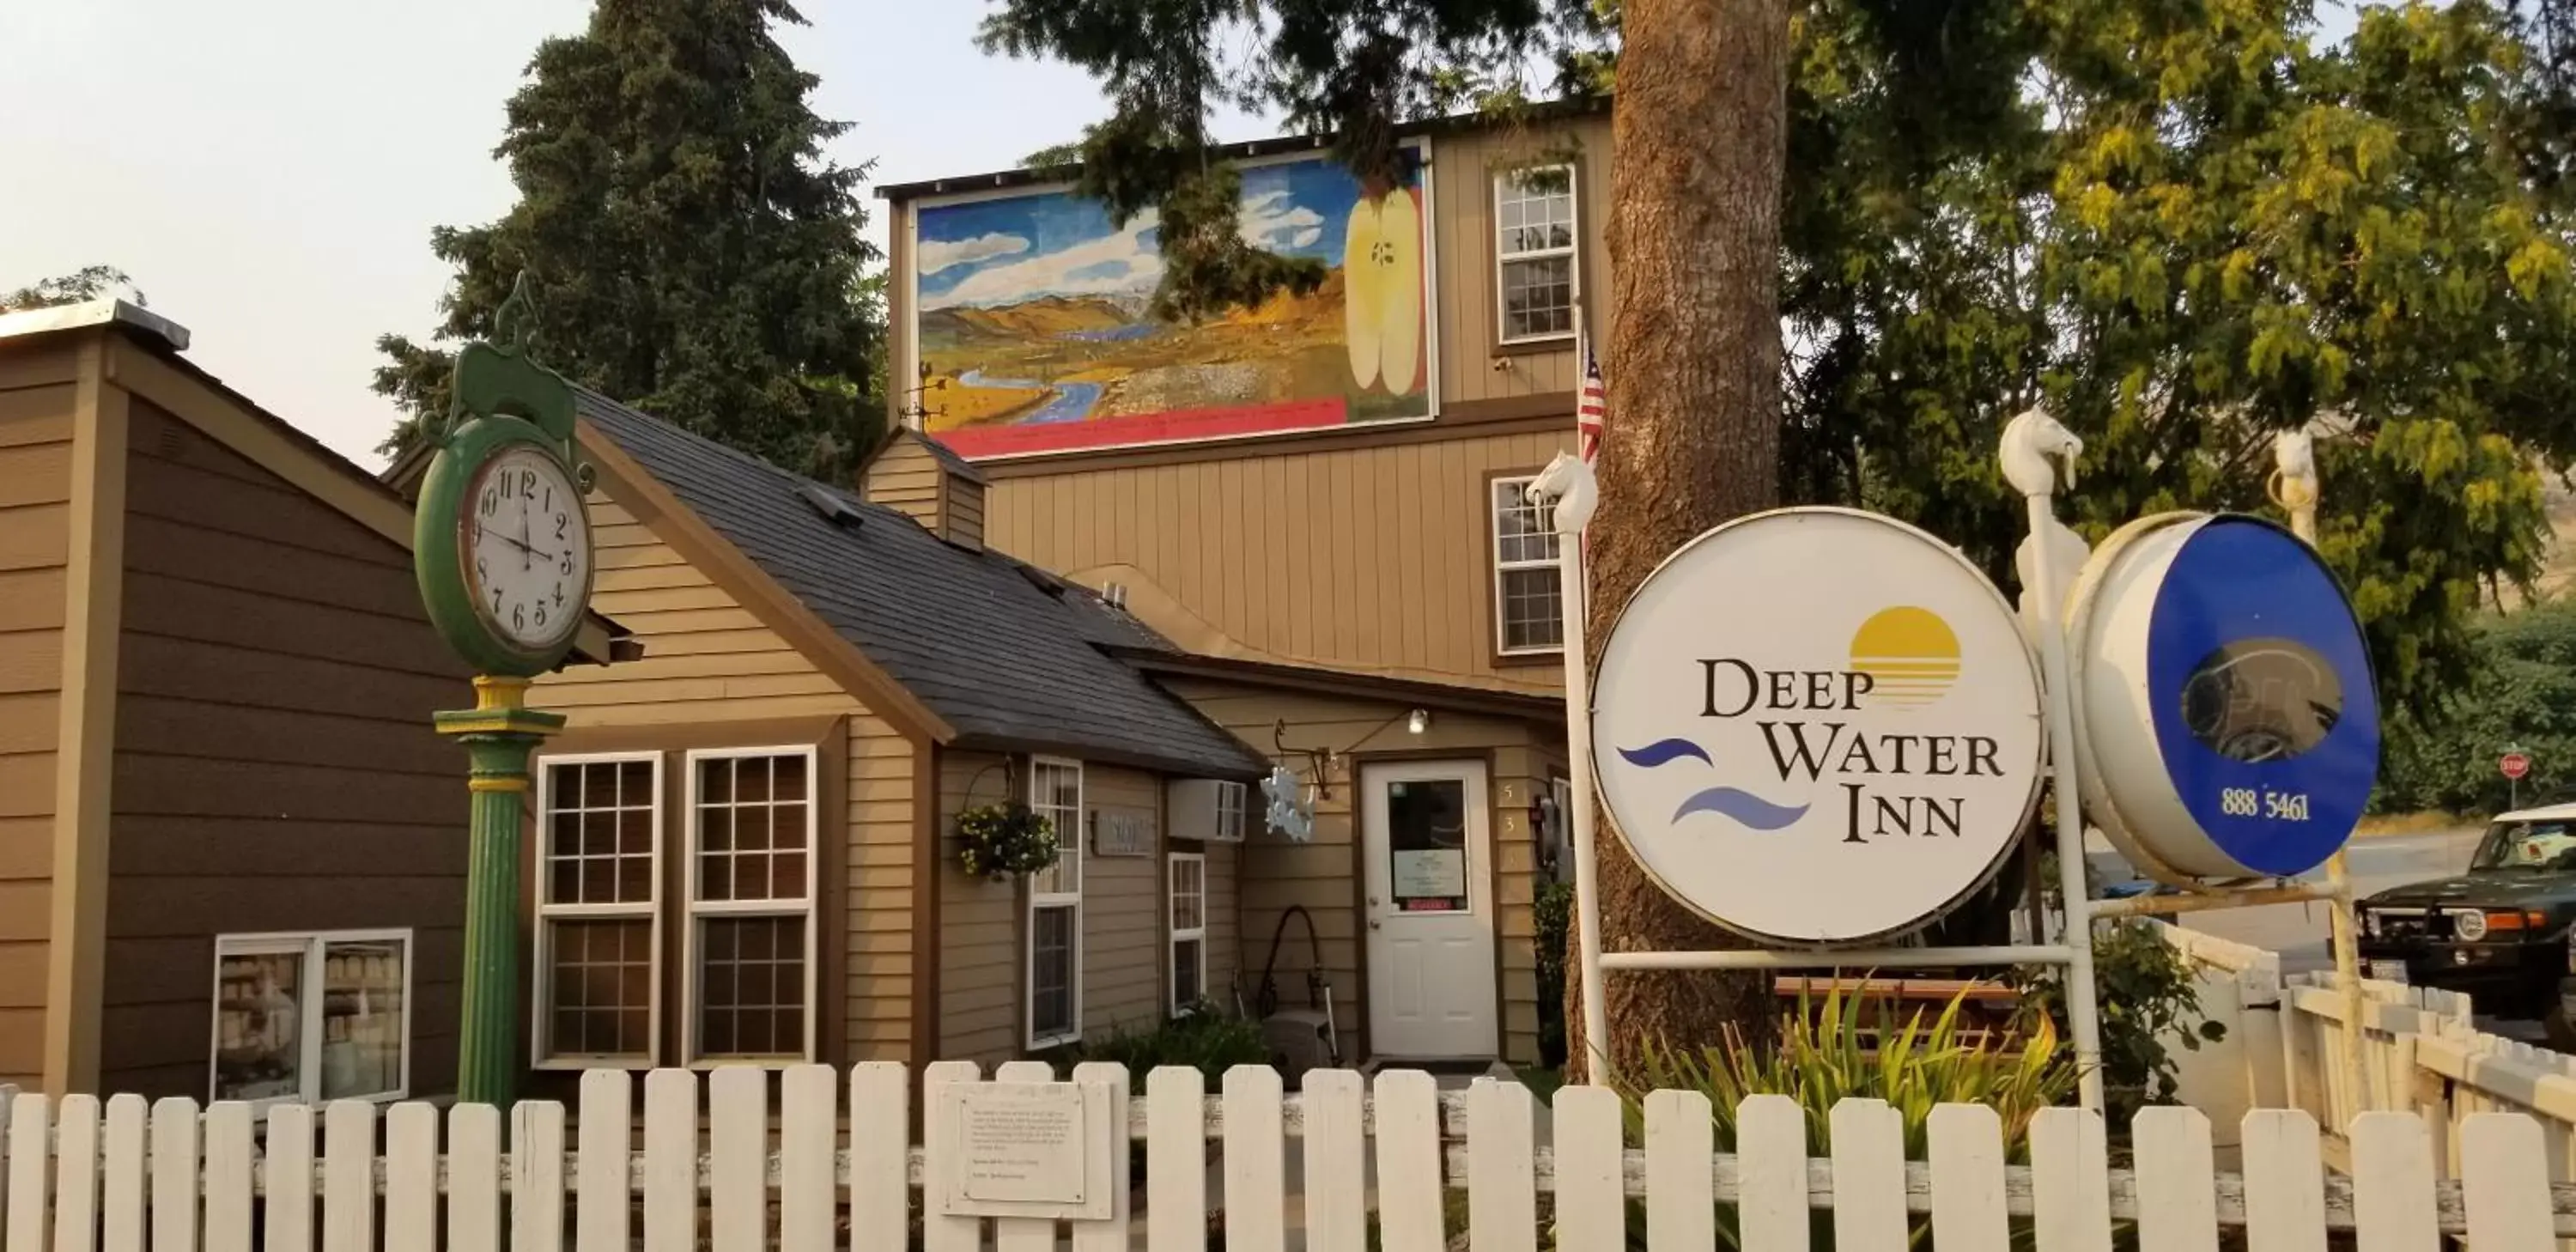 Property Building in Deep Water Inn